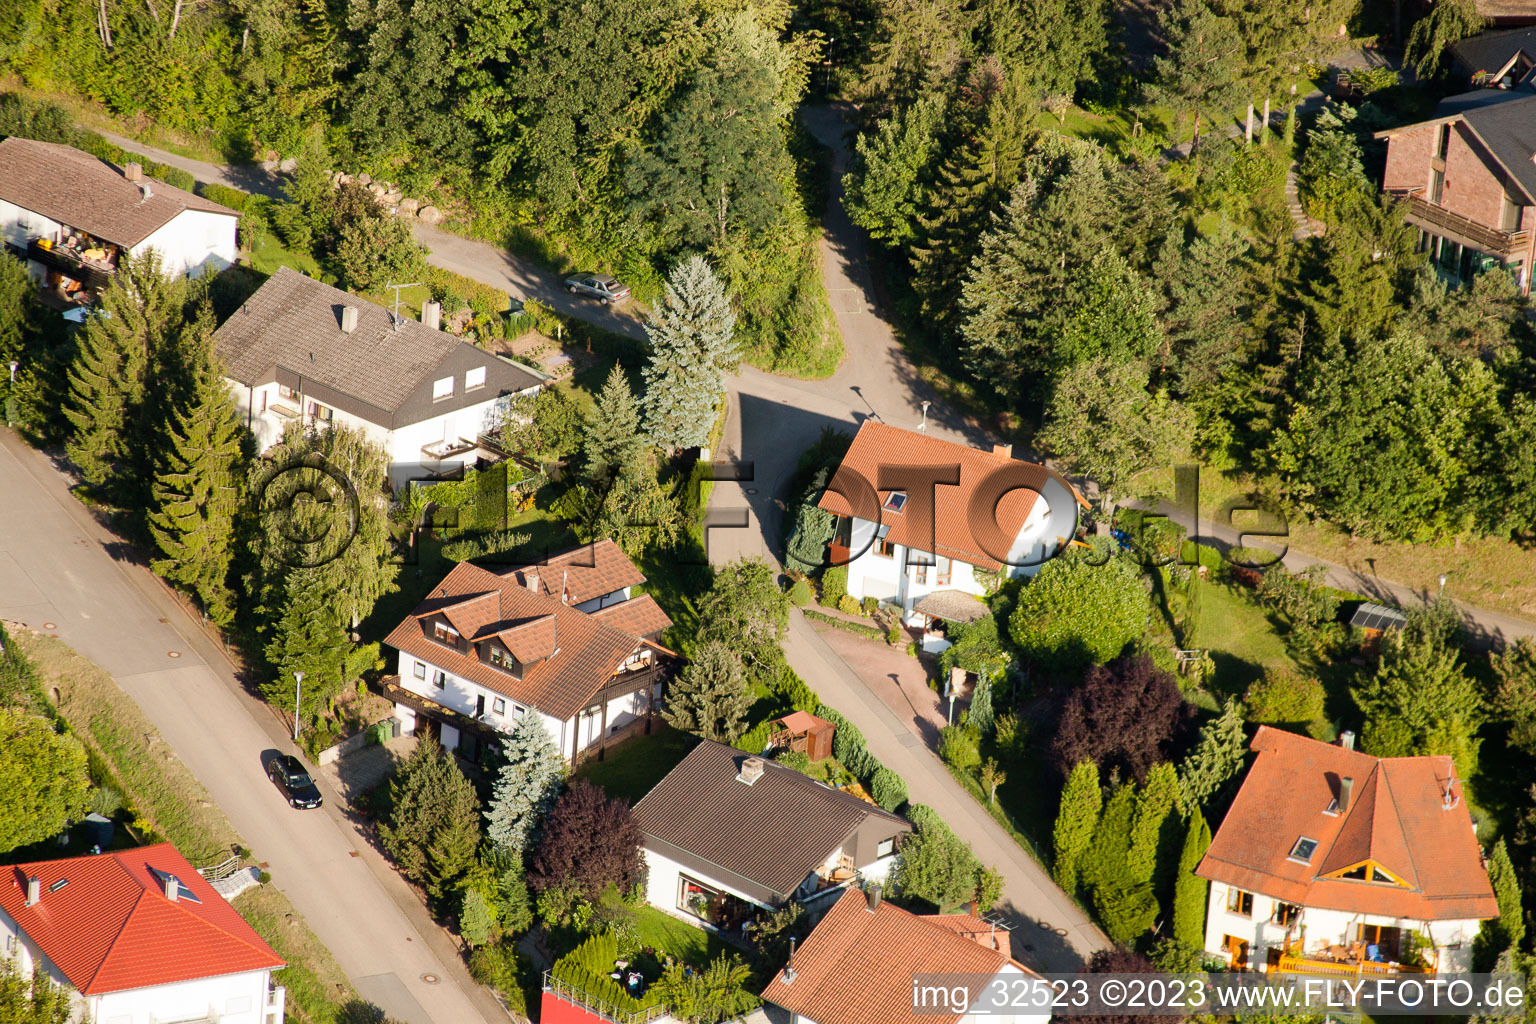 Keltern im Bundesland Baden-Württemberg, Deutschland von der Drohne aus gesehen